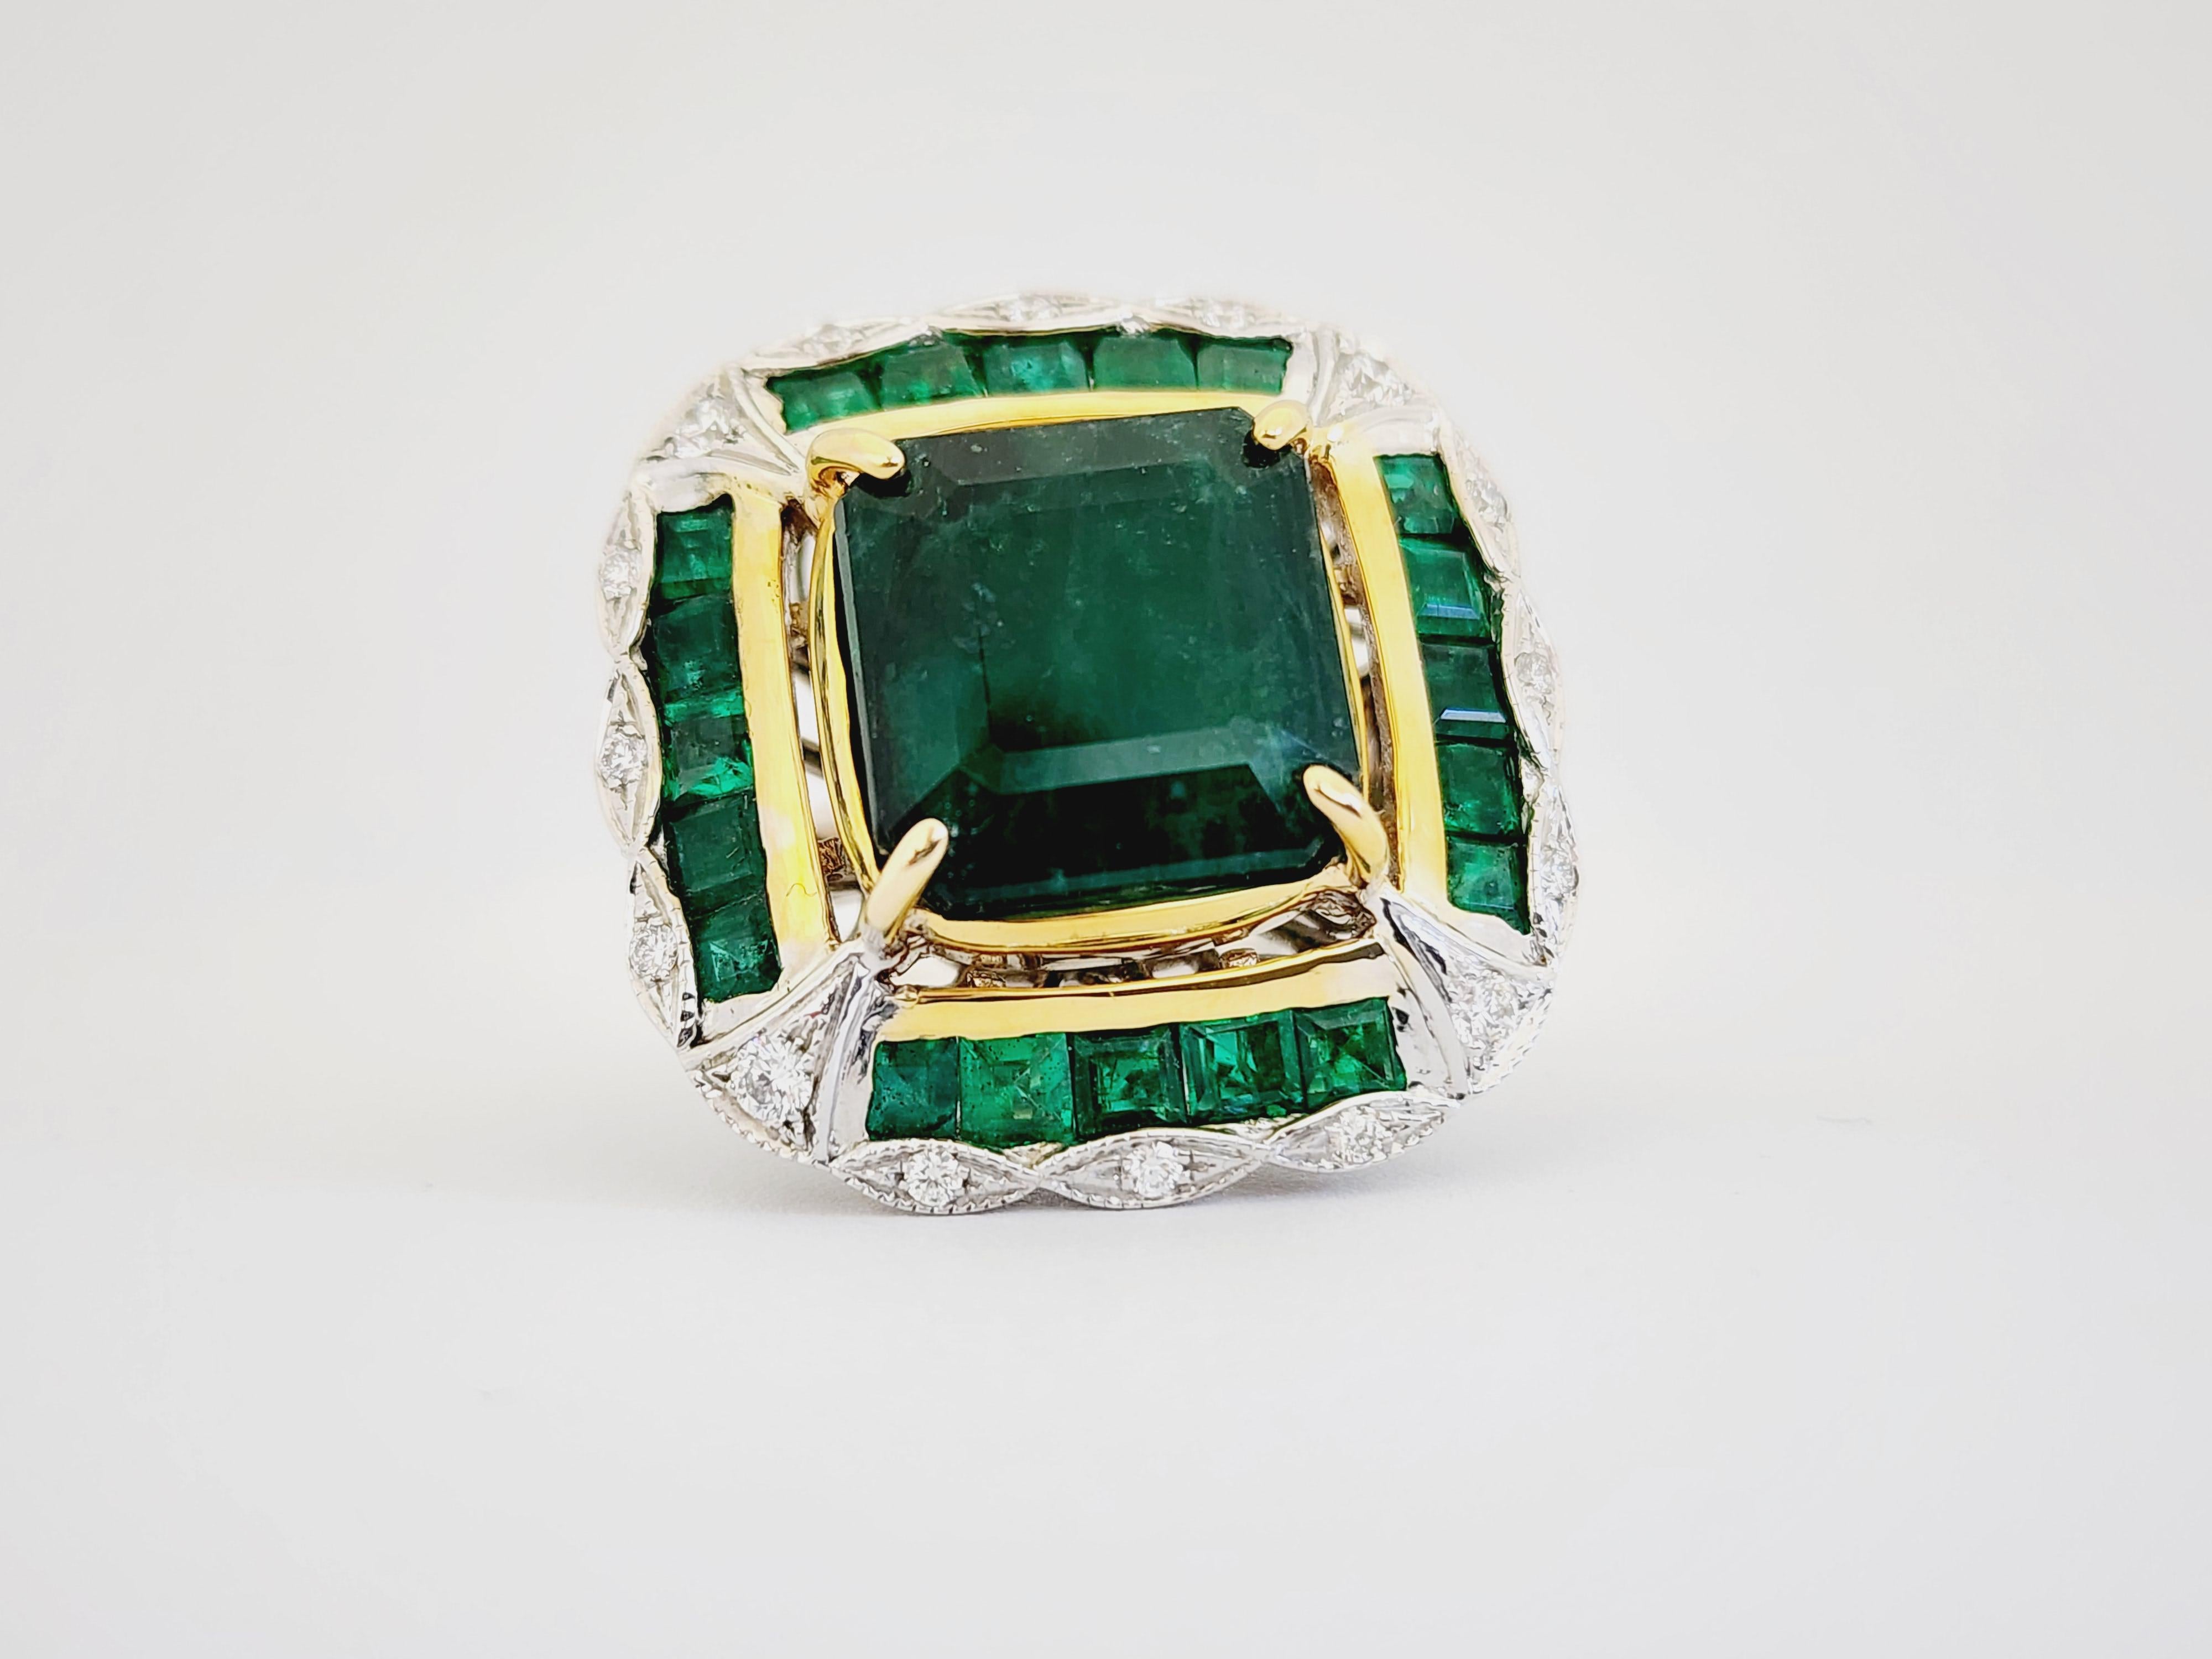 Magnificent Natural Emerald White Gold Diamond Ring 18 Karat, Transparent Vivid Green.

18 Karat Weißgold, schwere Goldfassung, Ringgröße 7.

12,71 Karat Zentraler Smaragd

4,75 Karat seitlicher Smaragd

0,65 Karat seitliche Diamanten